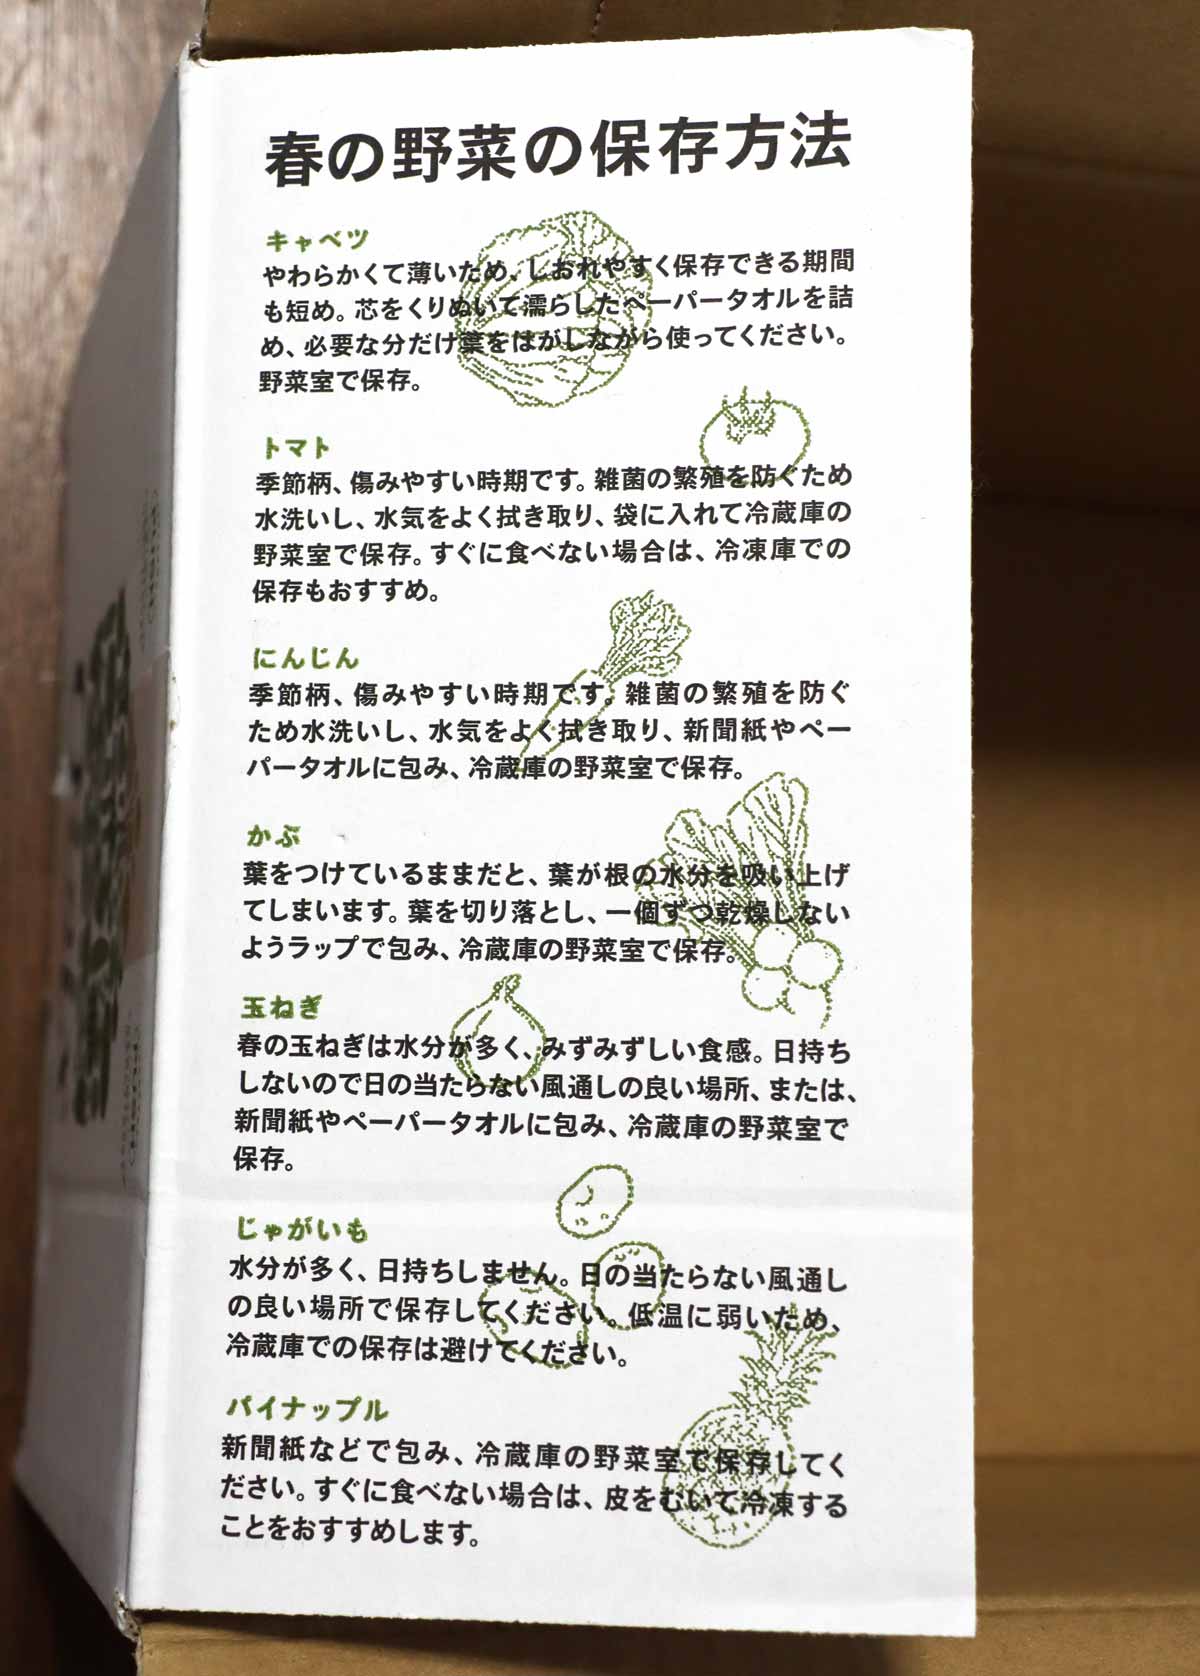 箱に記載されている野菜の保存方法